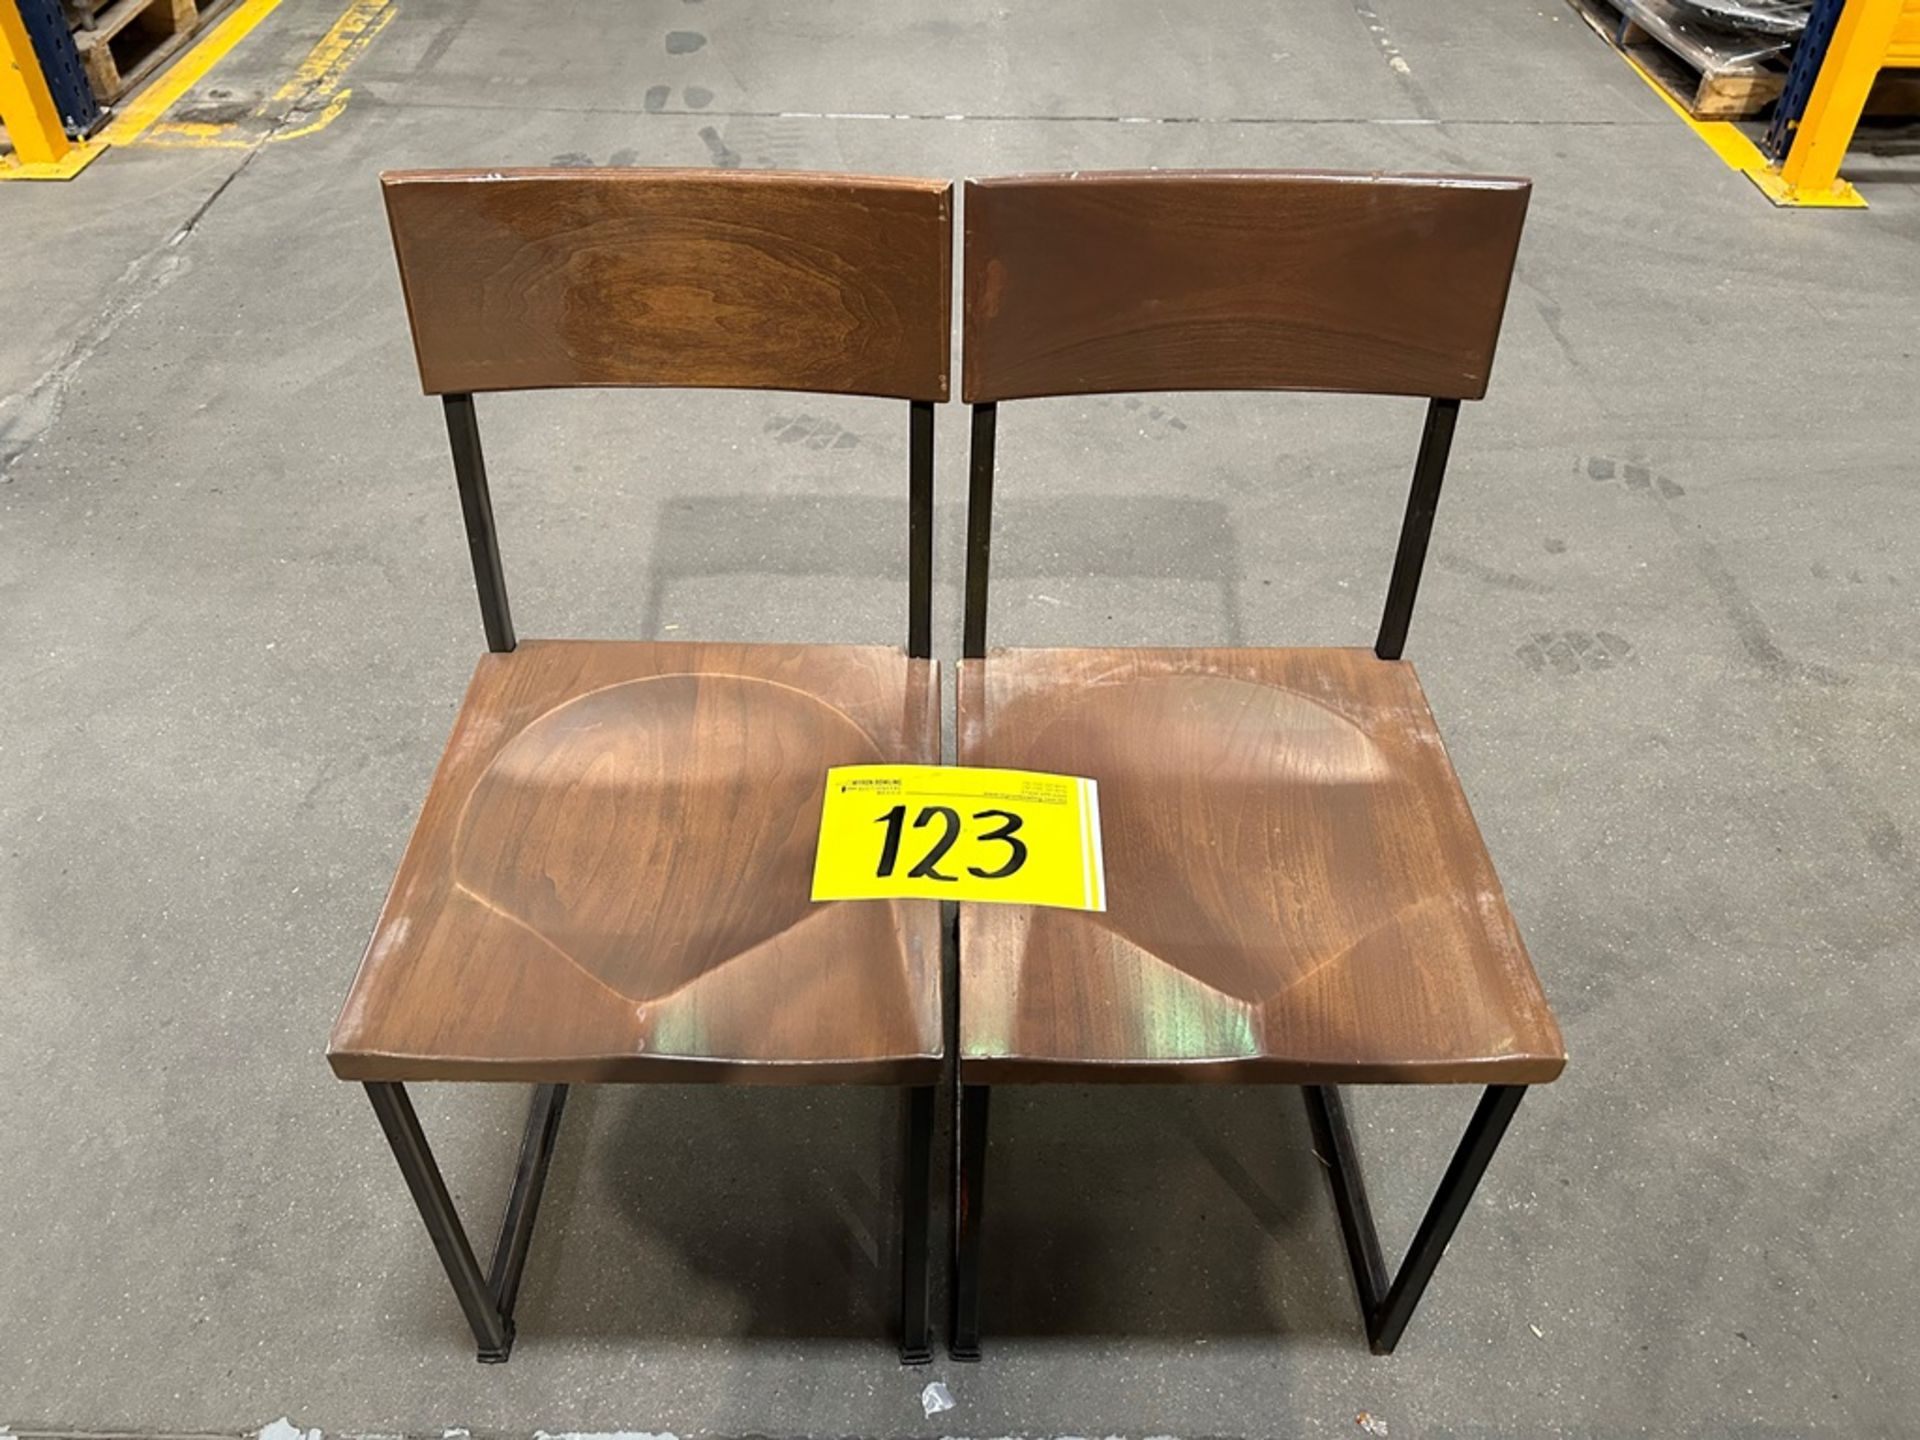 6 sillas en acero/madera color negro/café medidas 48 cm x 41 cm x 87 cm (Equipo usado) - Image 4 of 5